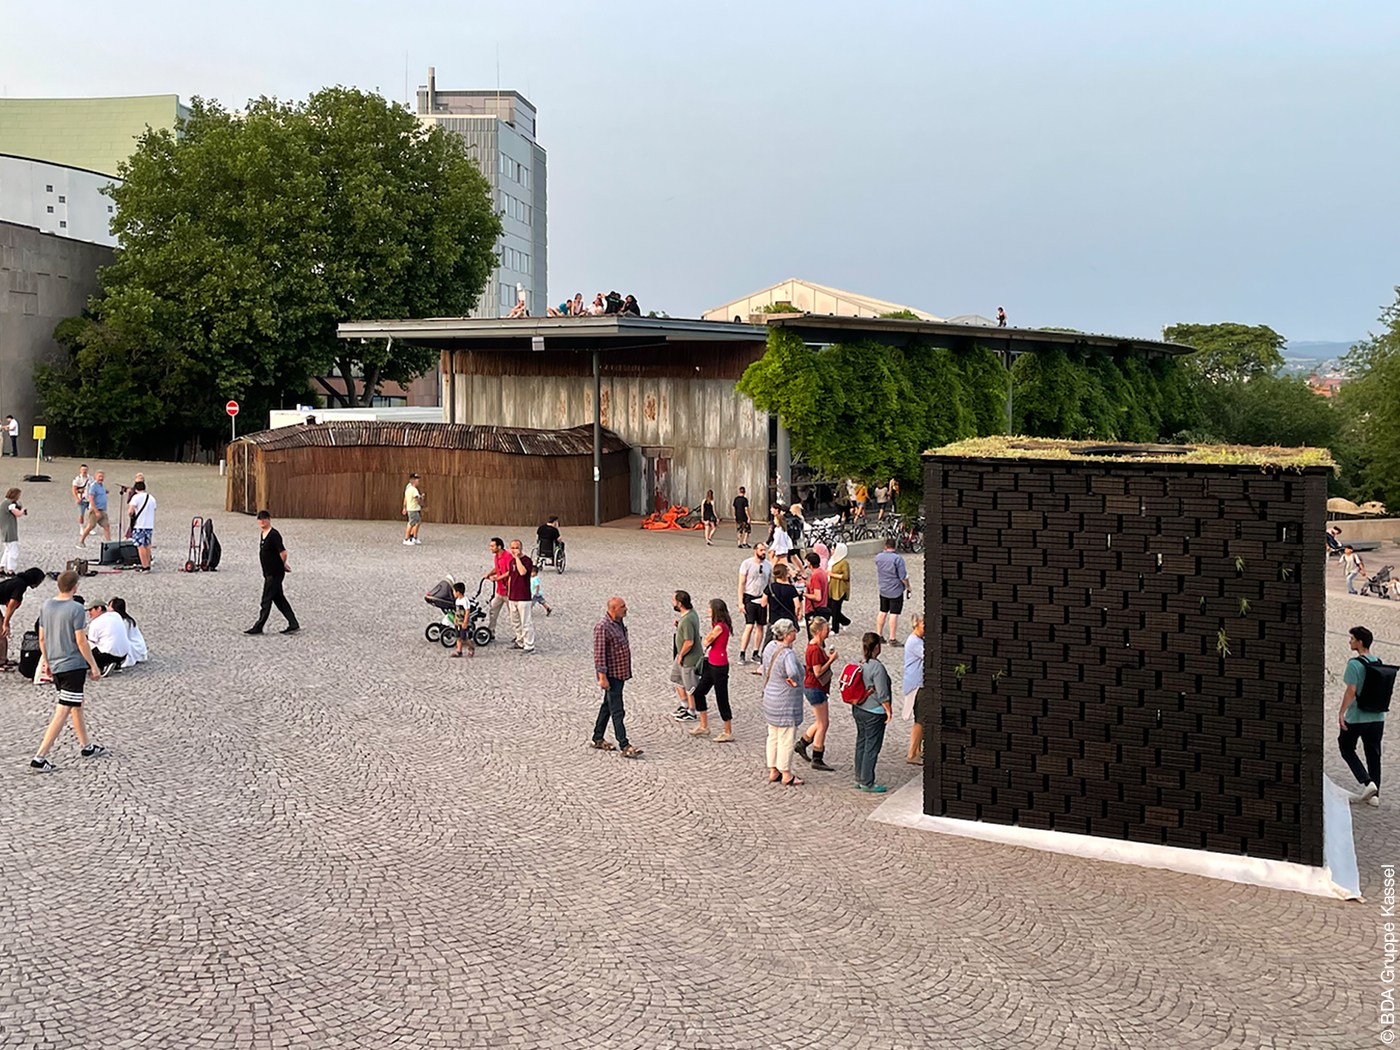 Bauwerk der documenta fifteen auf einem öffentlichen Platz